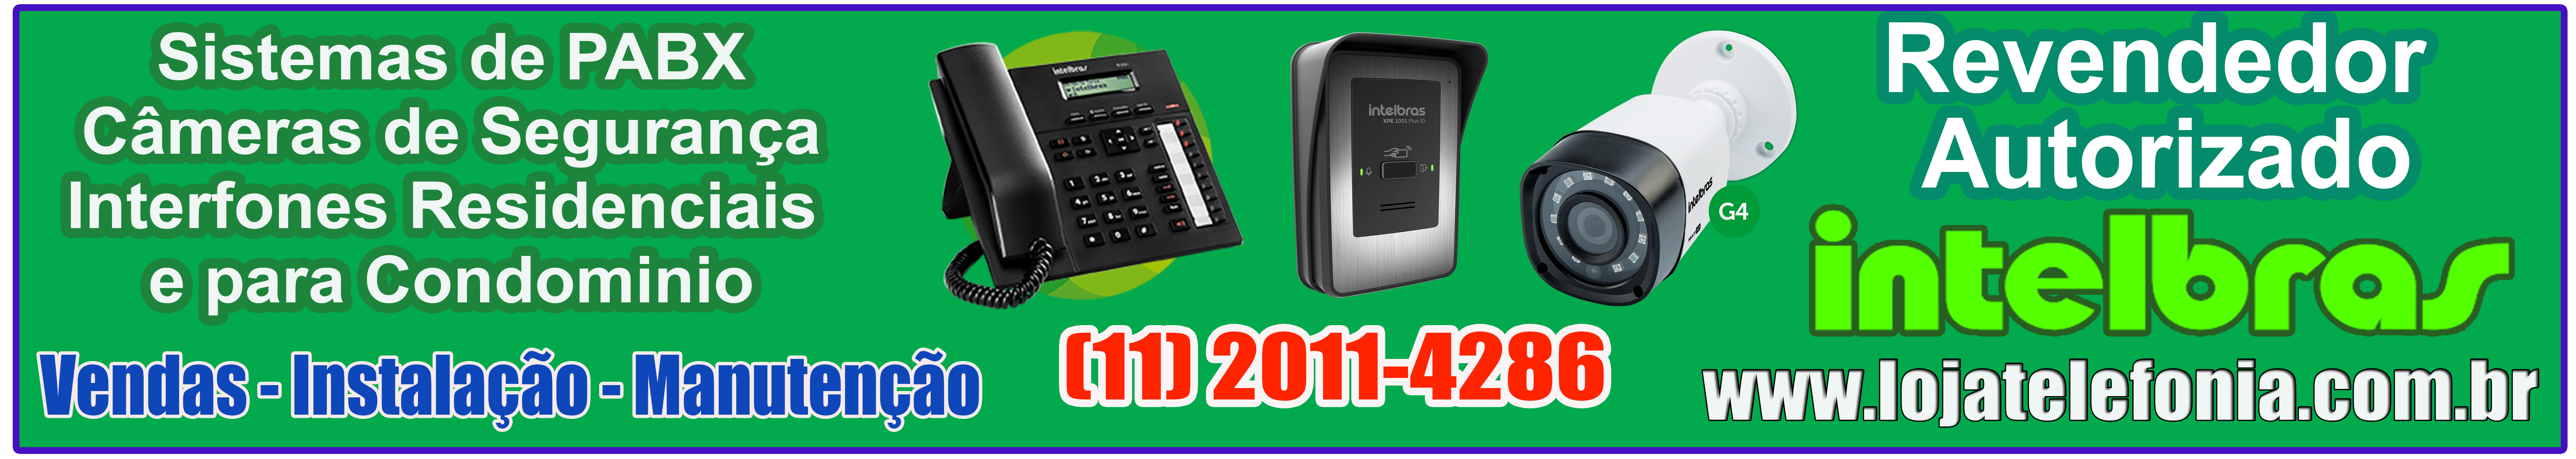 Instalação de Interfones - Intelbras Maxcom - Assistencia Tecnica - Vendas - ORÇAMENTO LIGUE: (11) 2011 4286